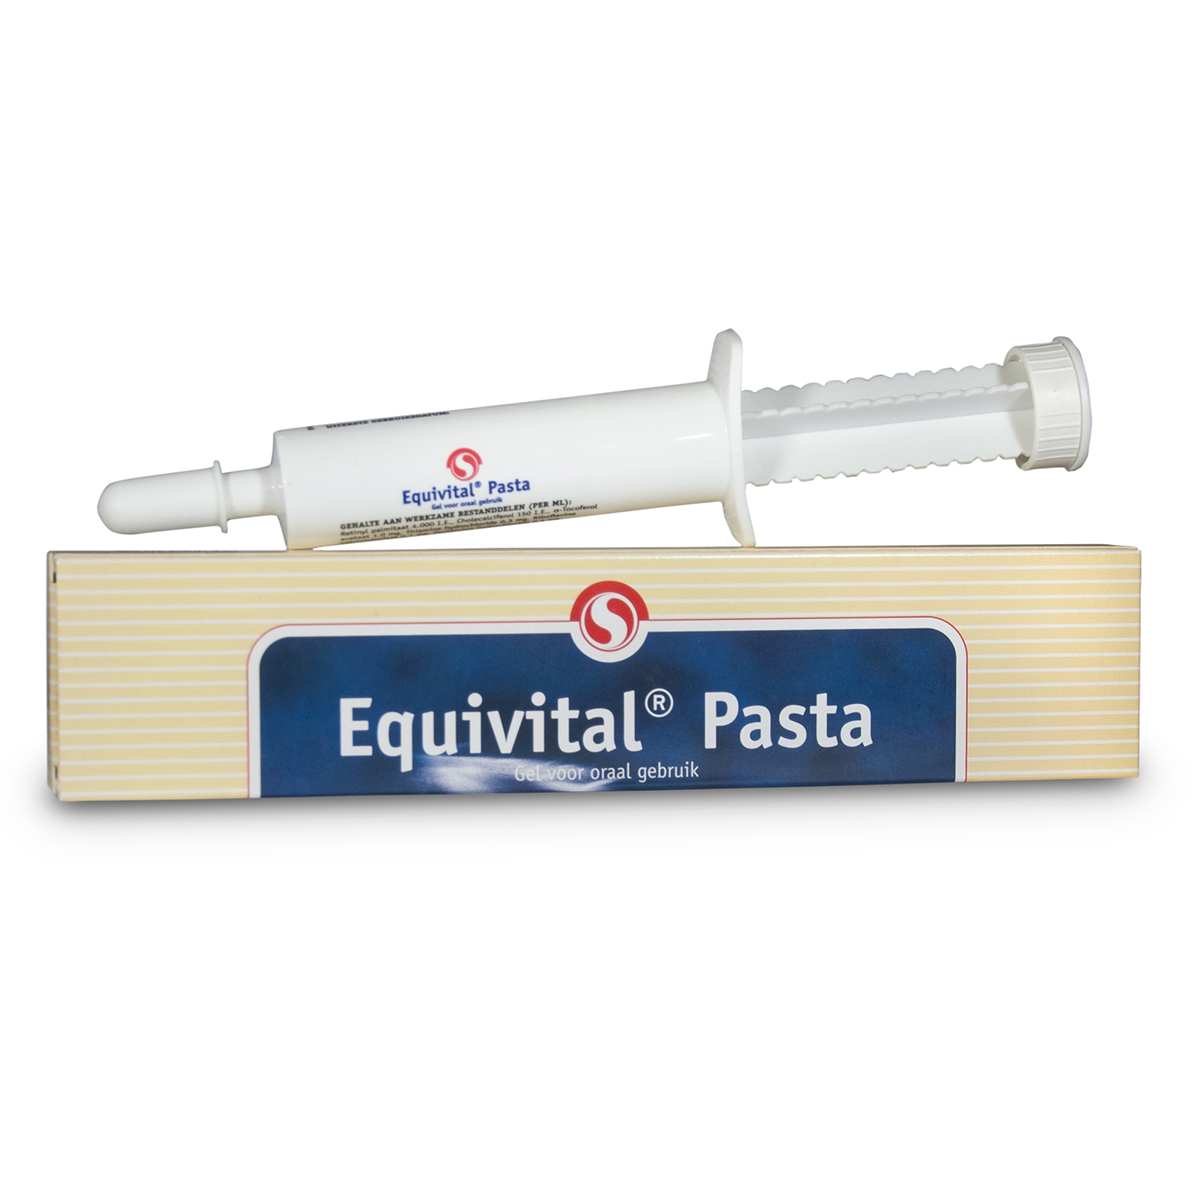 equivital-vitamine-pasta_1500x1500_28348